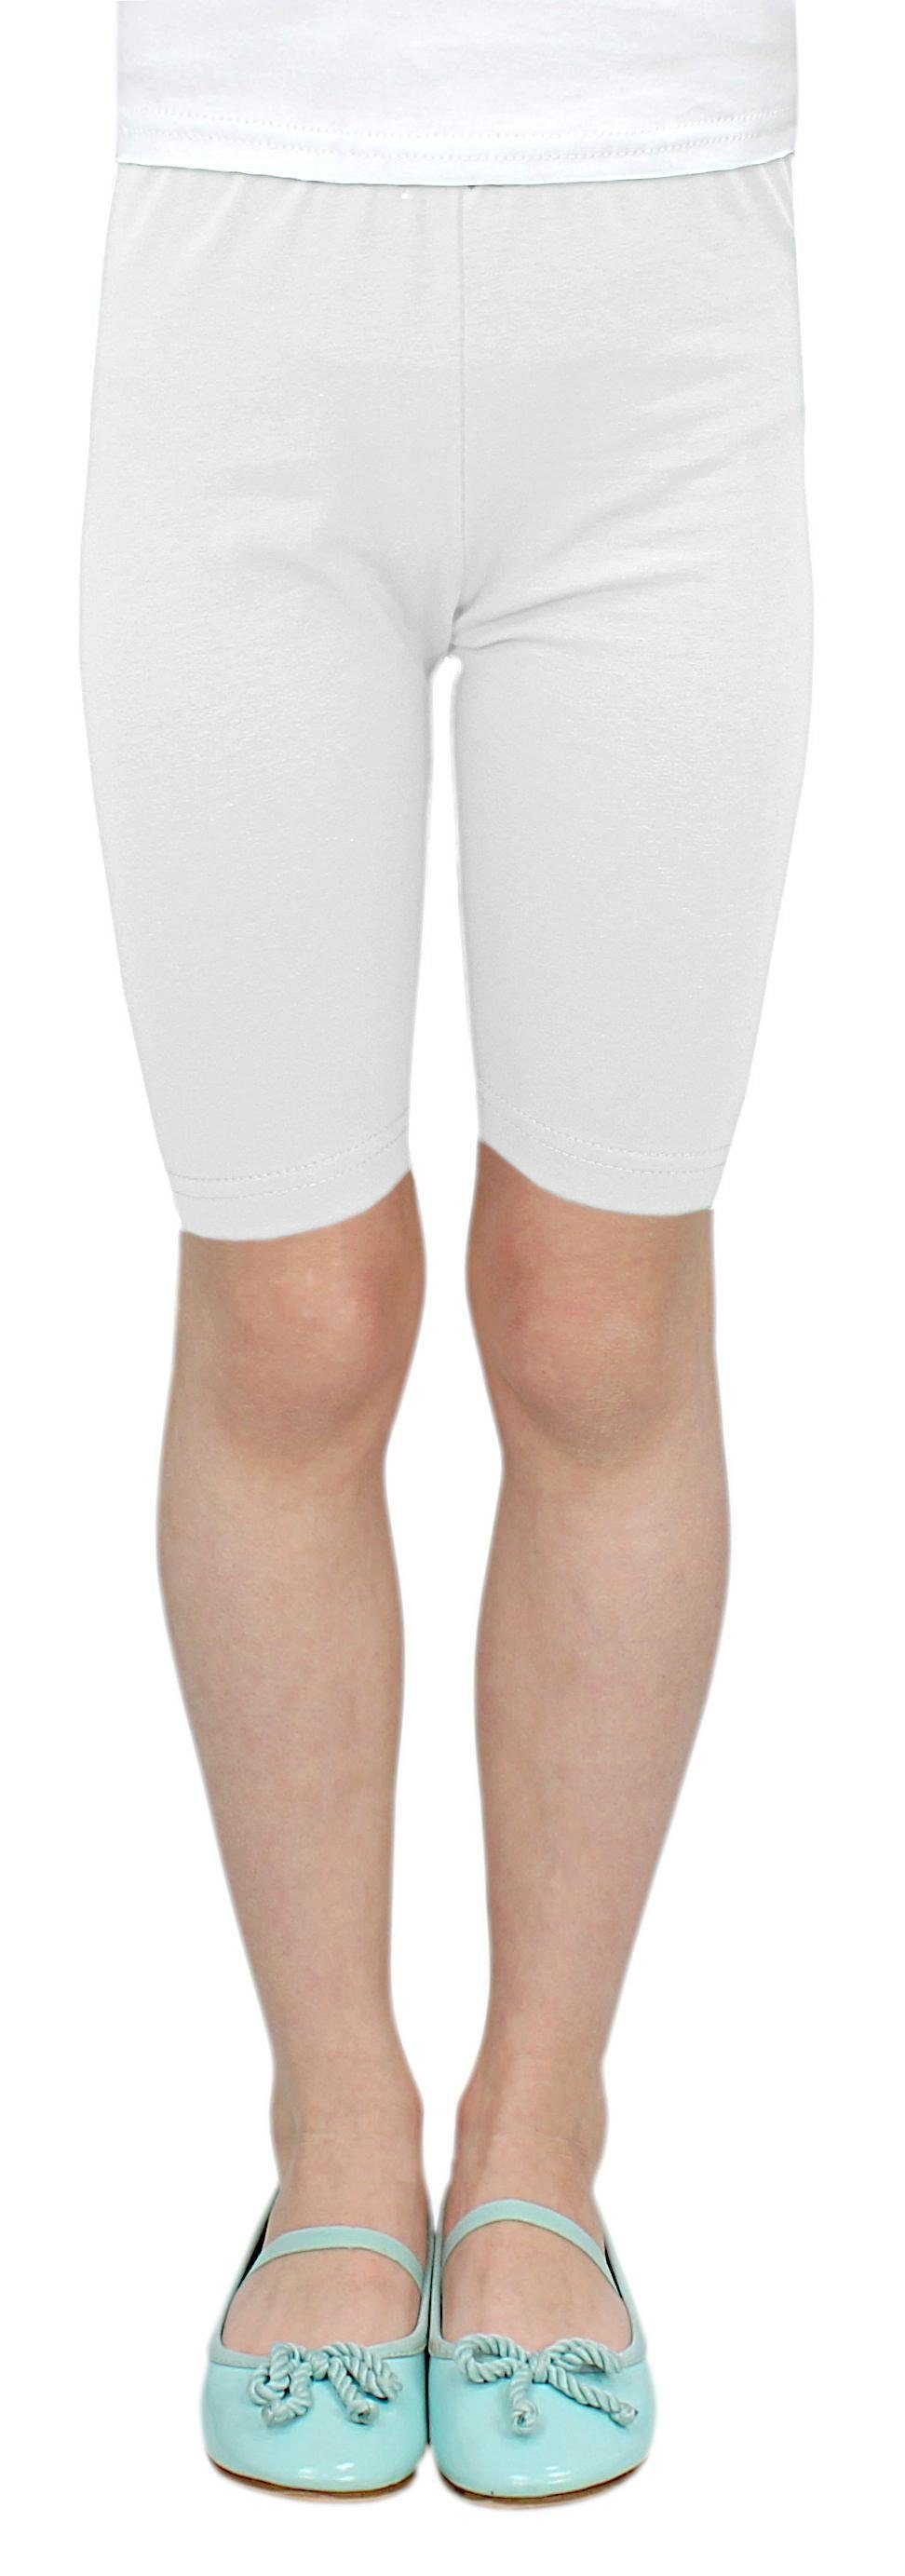 Radlerhose TupTam Pack Radlerhose 3er TupTam Kurz Mädchen Weiß Leggings